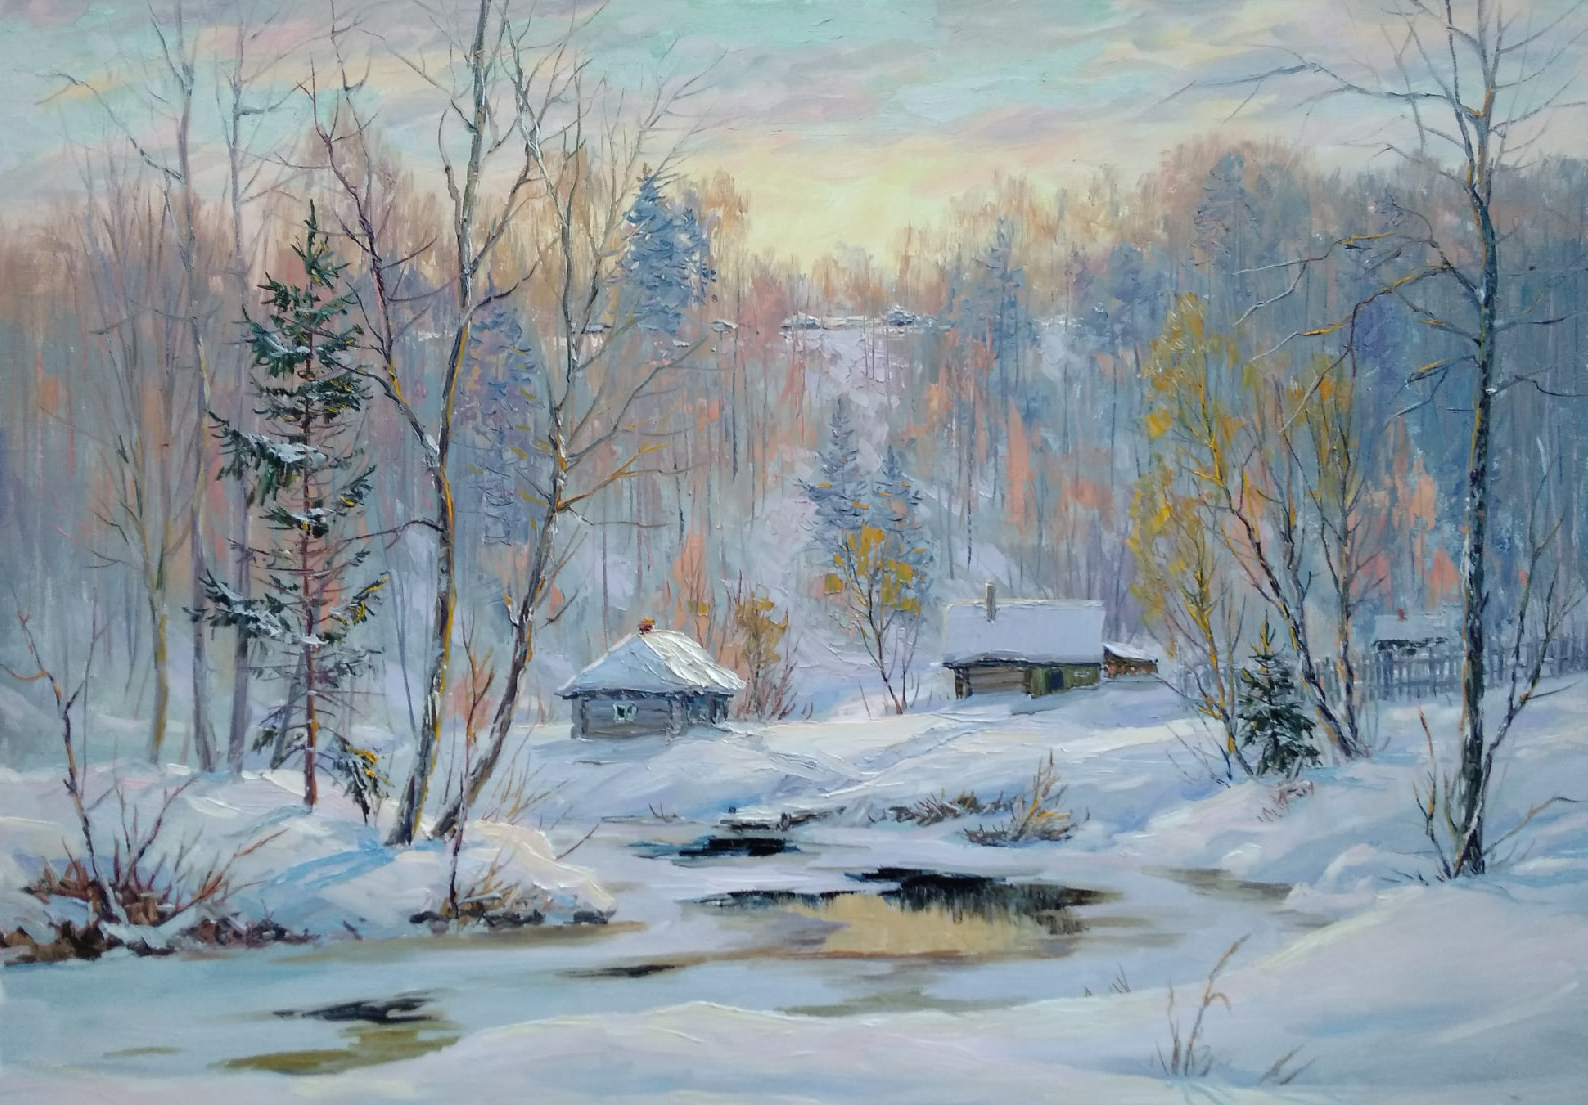 River Is Freezing - 1, Vyacheslav Cherdakov, Buy the painting Oil